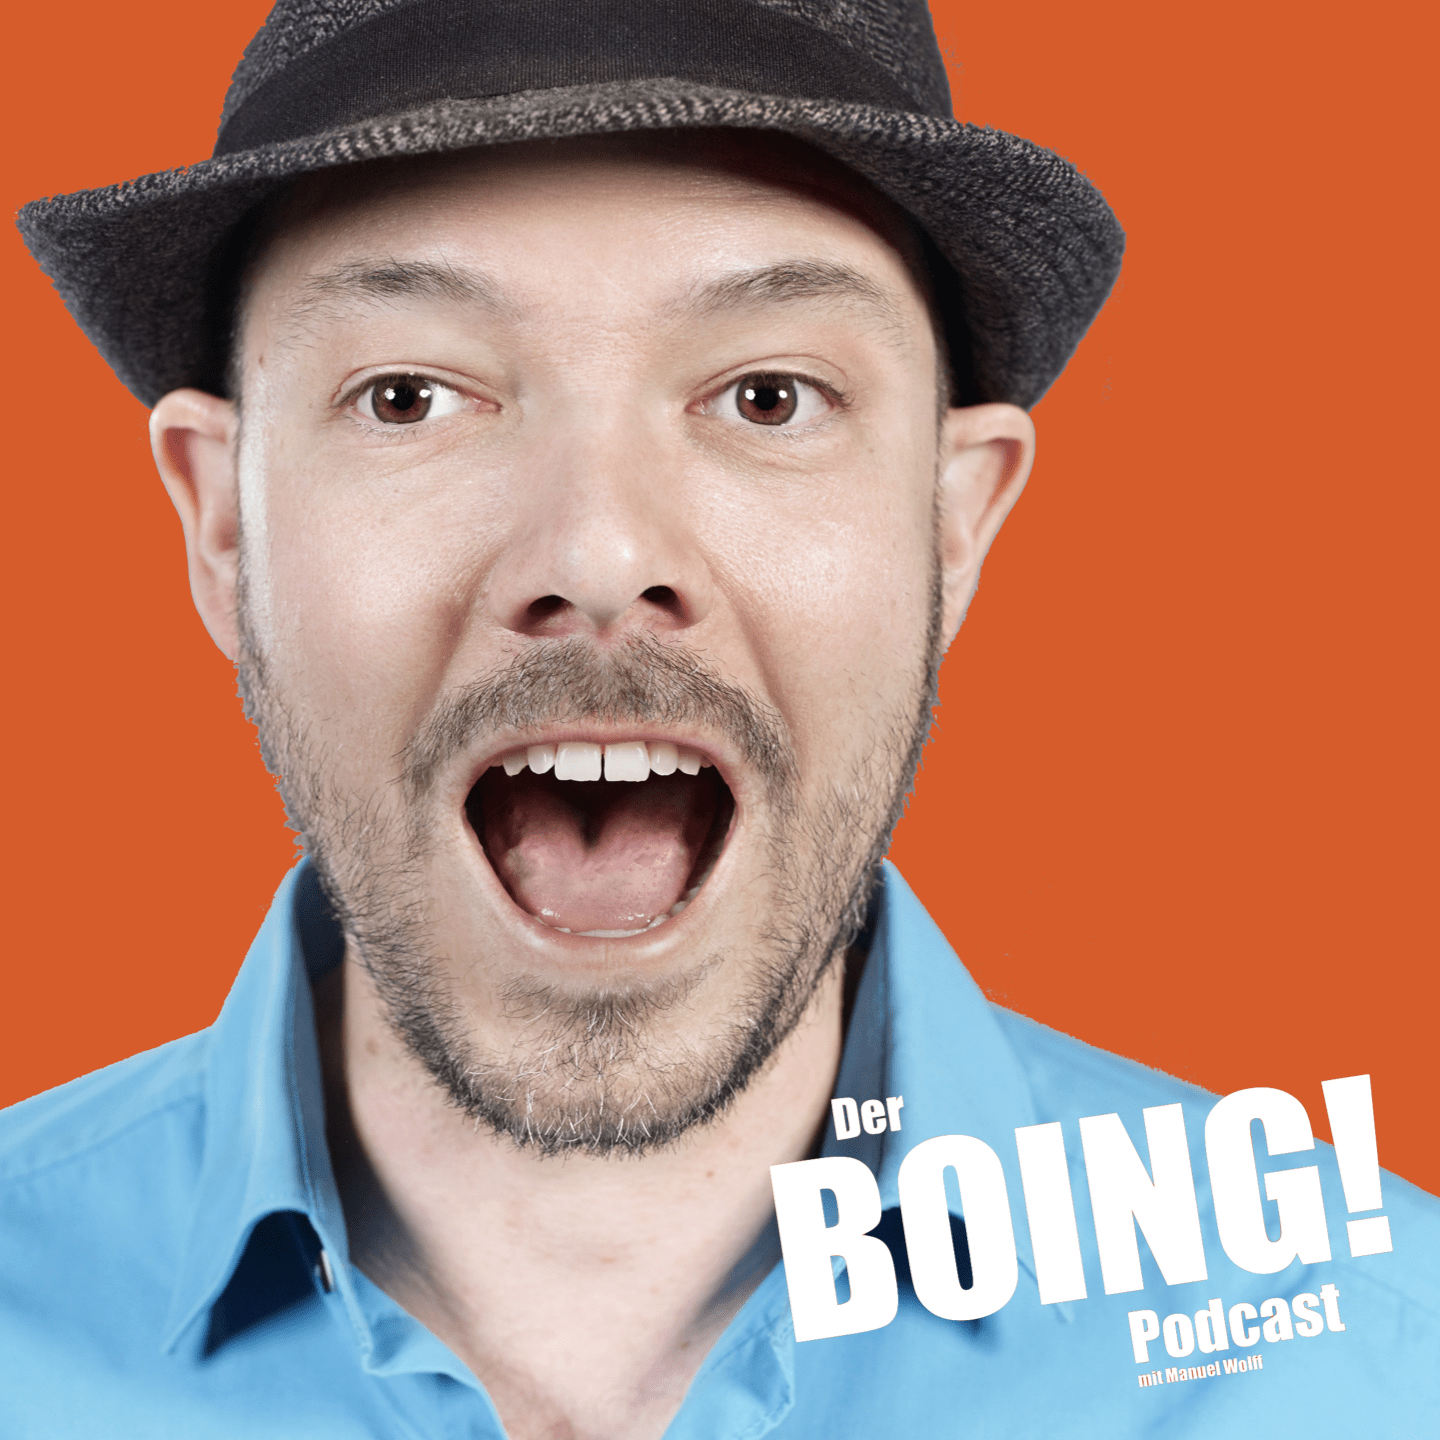 derboingpodcast testlogo 2 - BOING! Comedy Club